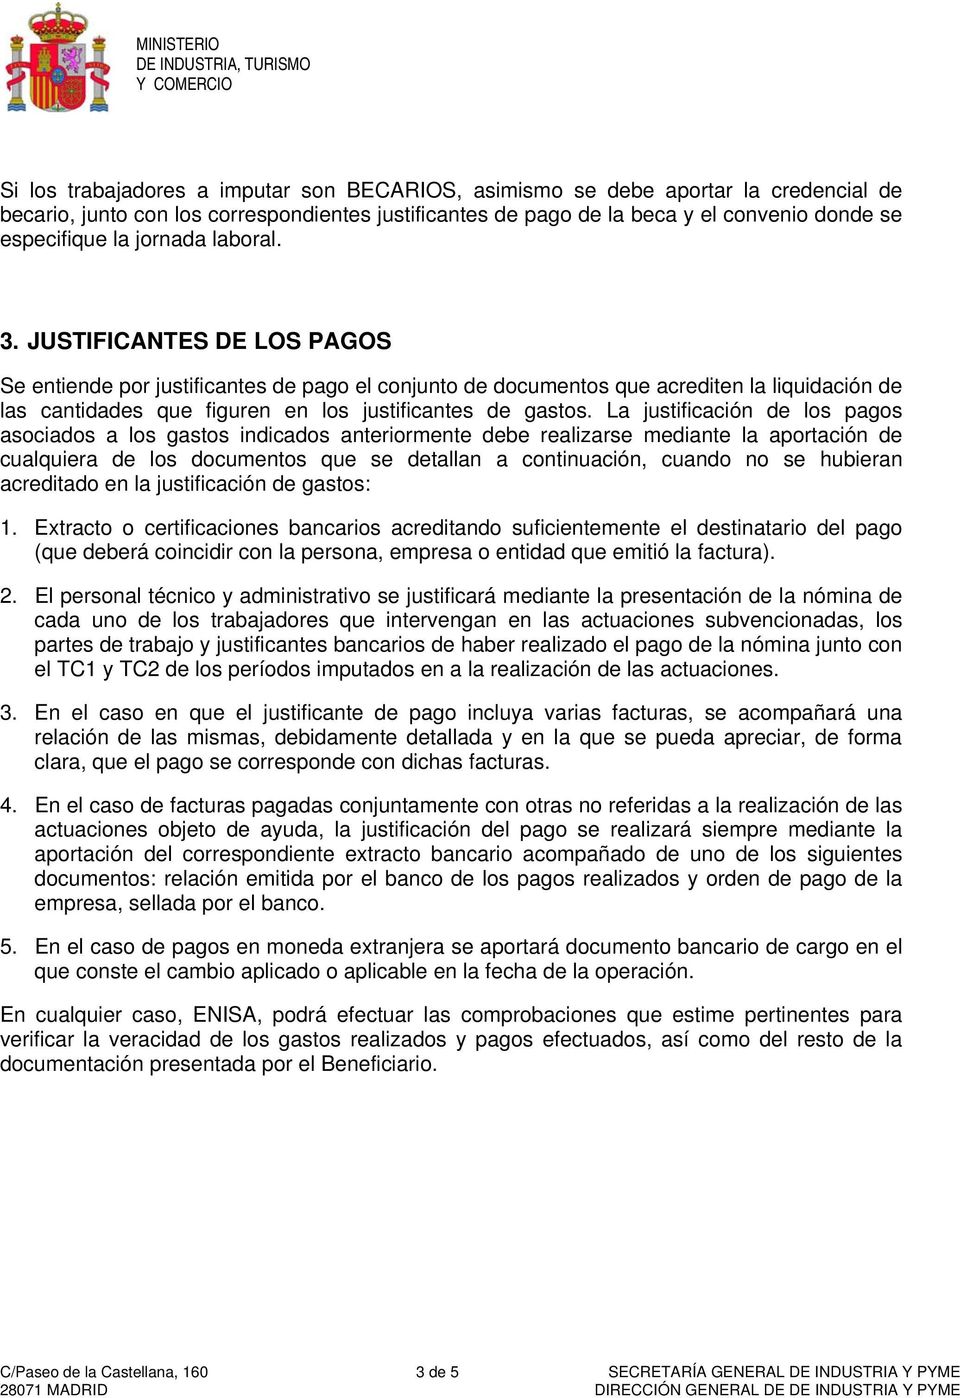 JUSTIFICANTES DE LOS PAGOS Se entiende por justificantes de pago el conjunto de documentos que acrediten la liquidación de las cantidades que figuren en los justificantes de gastos.